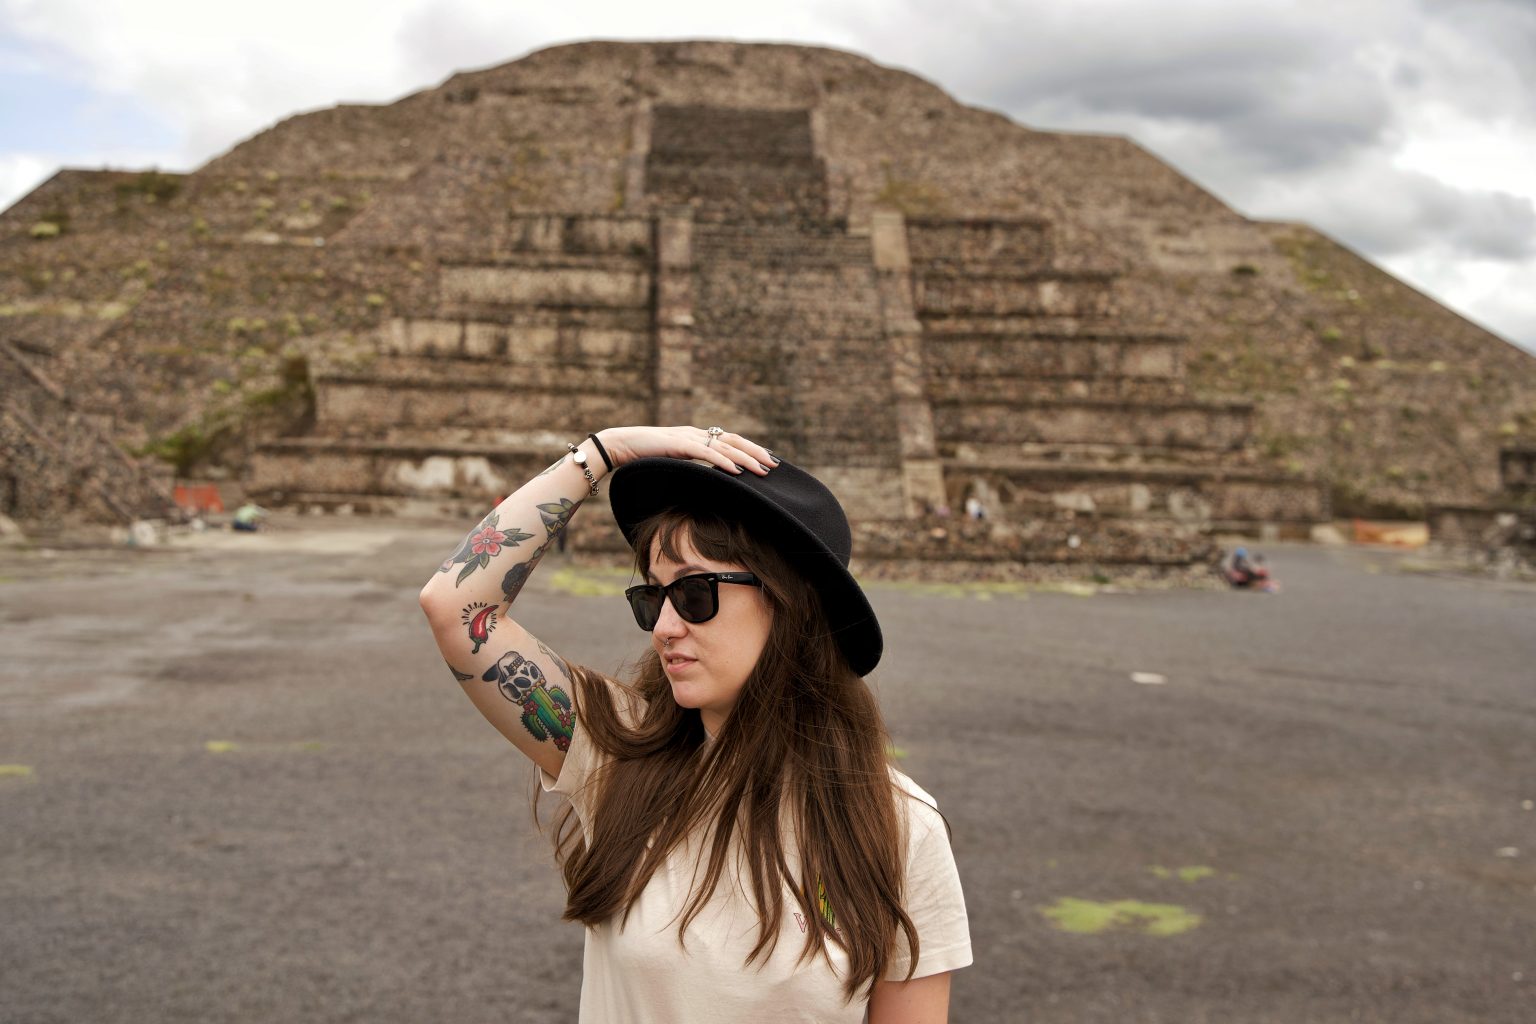 Pirámides de Teotihuacán. Cómo llegar a Teotihuacán desde Ciudad de México